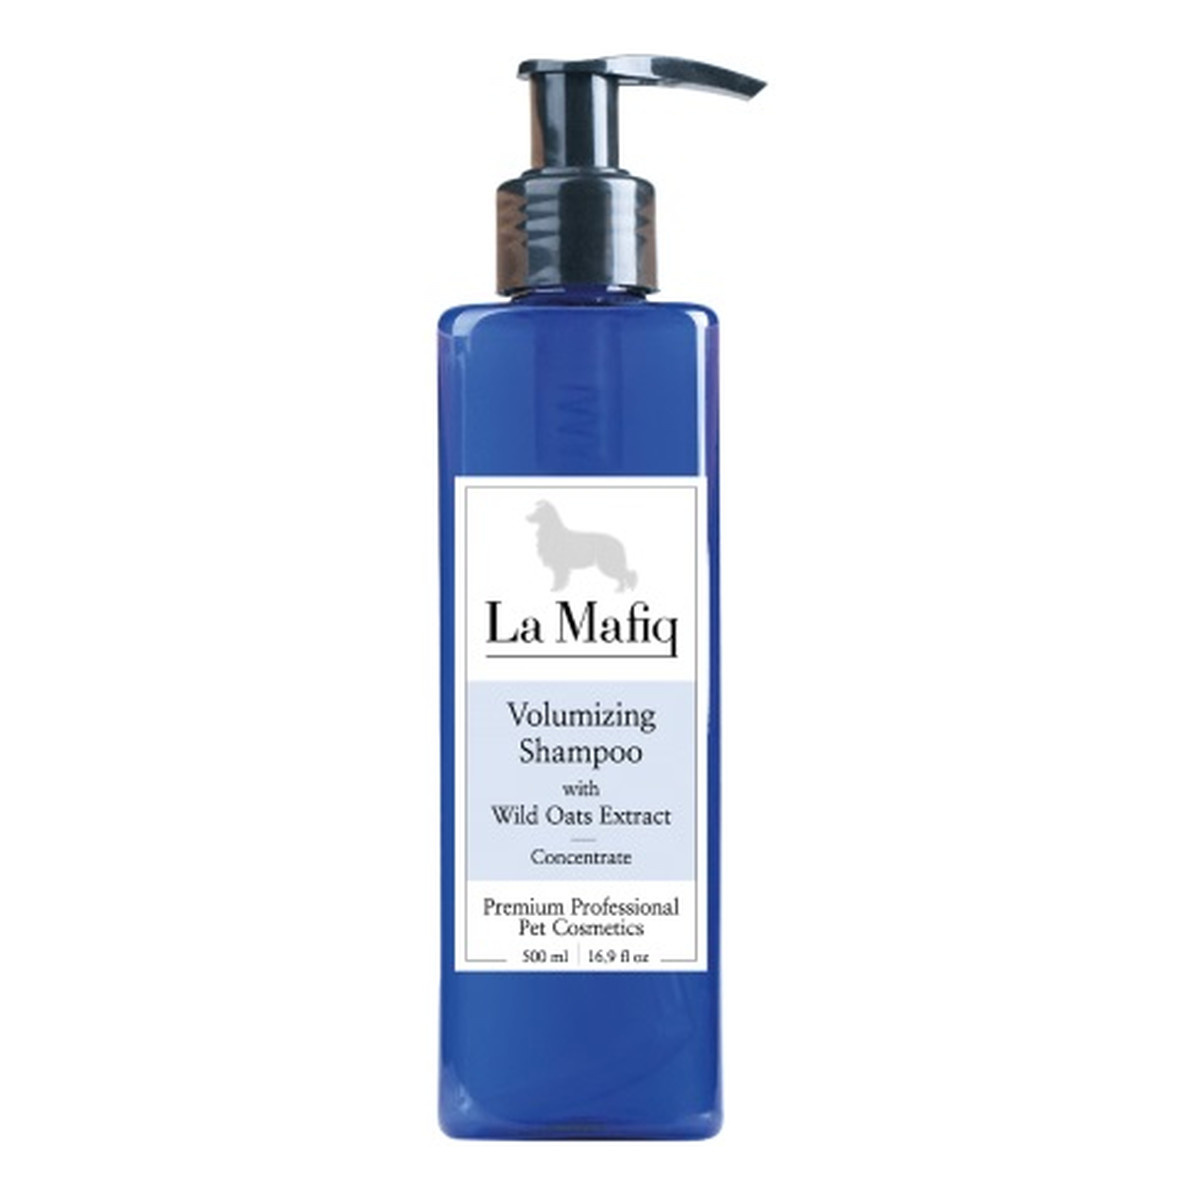 La Mafiq Volumizing Shampoo szampon zwiększający objętość z dzikim owsem 500ml